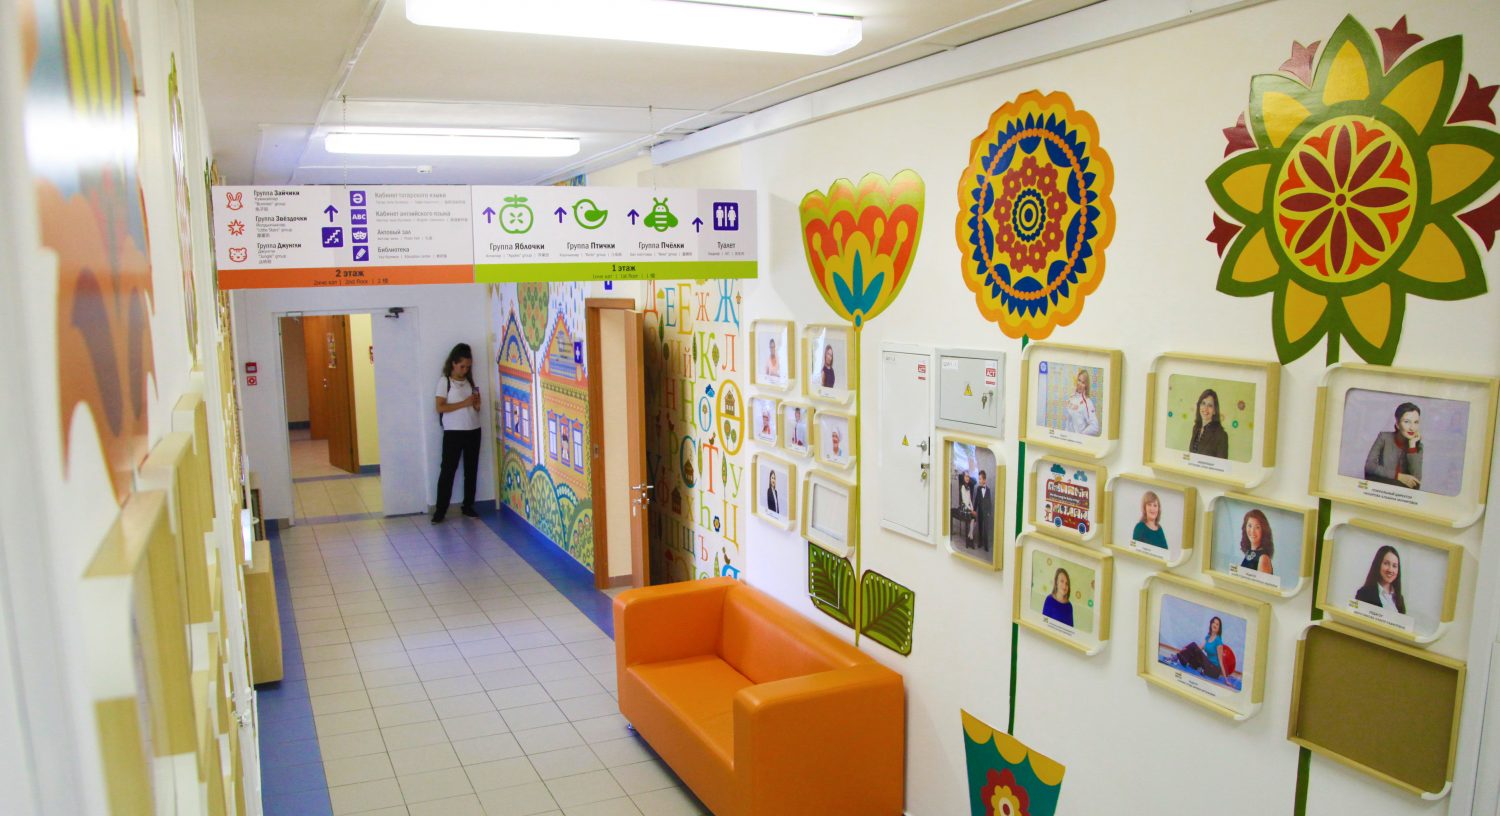 Сеть международных полилингвальных детских садов «Бала-Сити»